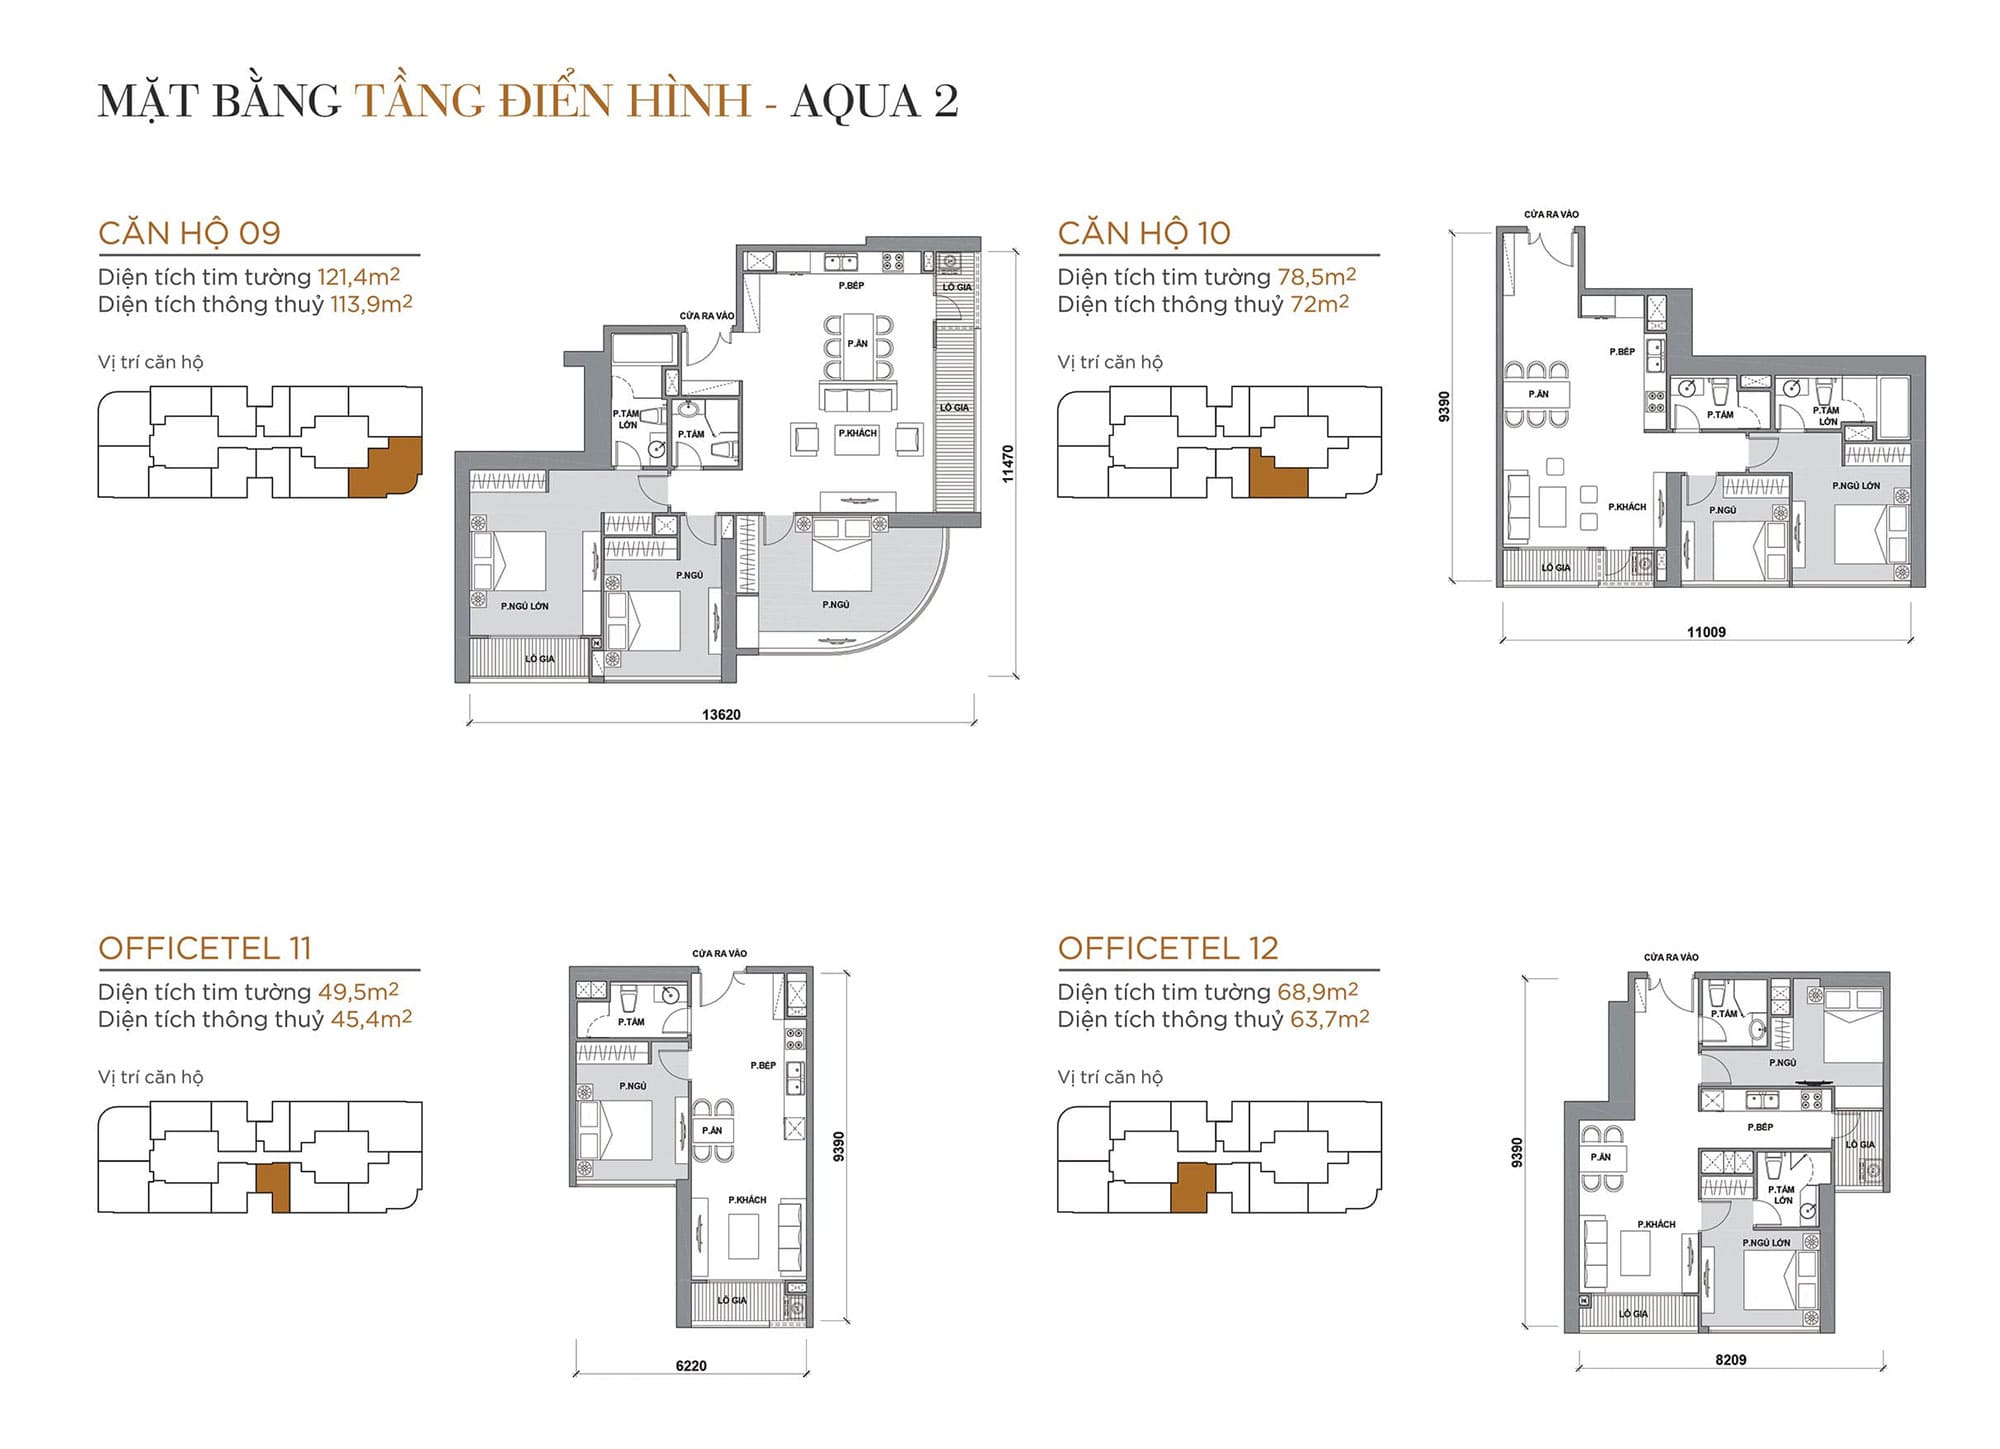 Layout căn hộ tầng điển hình tòa Aqua 2 loại Căn hộ 09, Căn hộ 10, Officetel 11, Officetel 12.